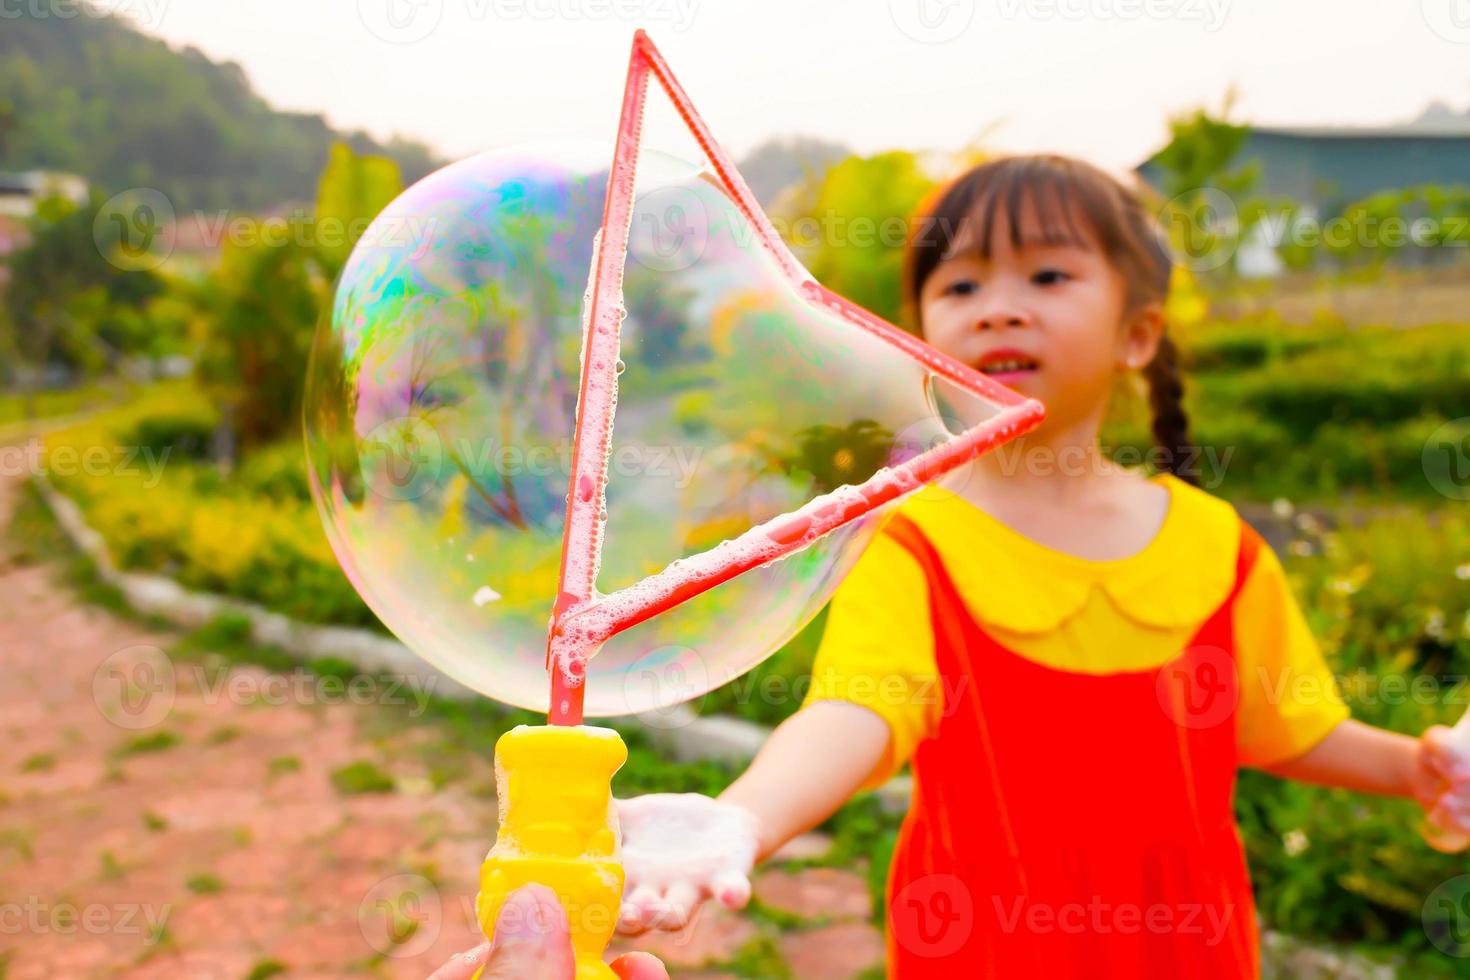 la encantadora niña viste un traje amarillo-naranja, un traje de gokowa o un mugunghwa jugando a la burbuja en un parque público. vestido de moda para niñas y adolescentes. foto